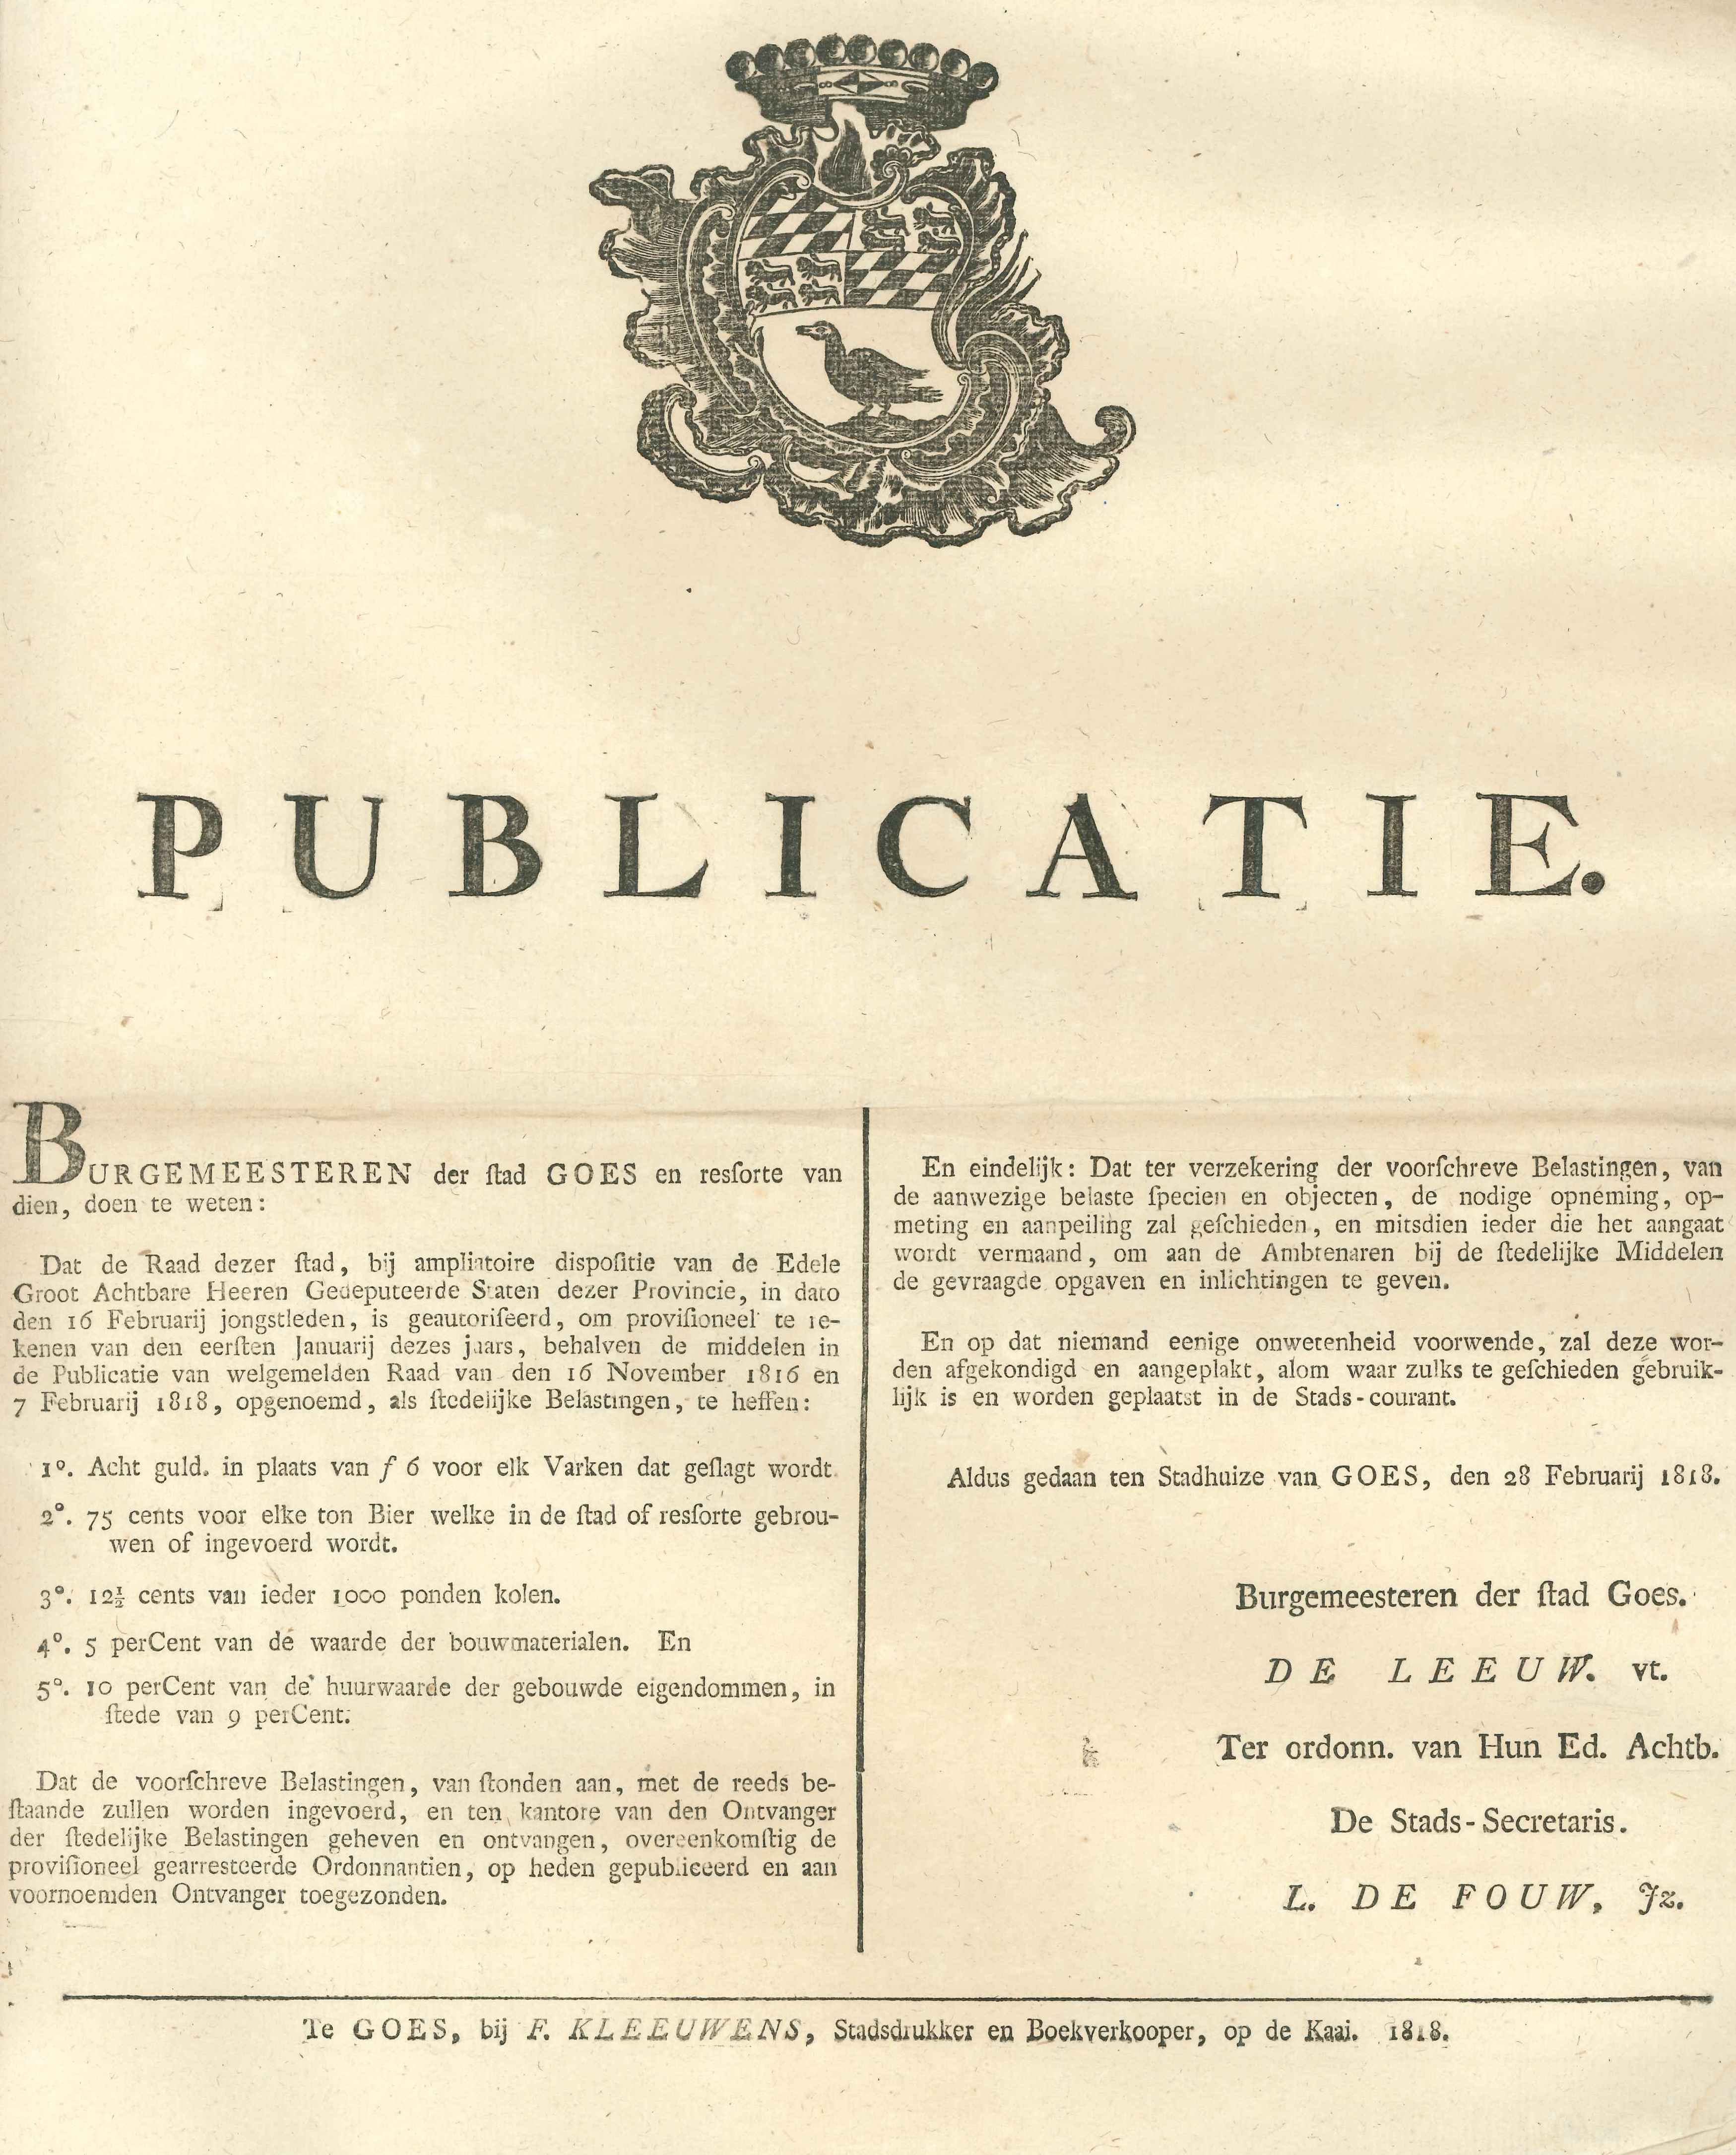 Bekendmaking over belasting op diverse goederen, 1818.